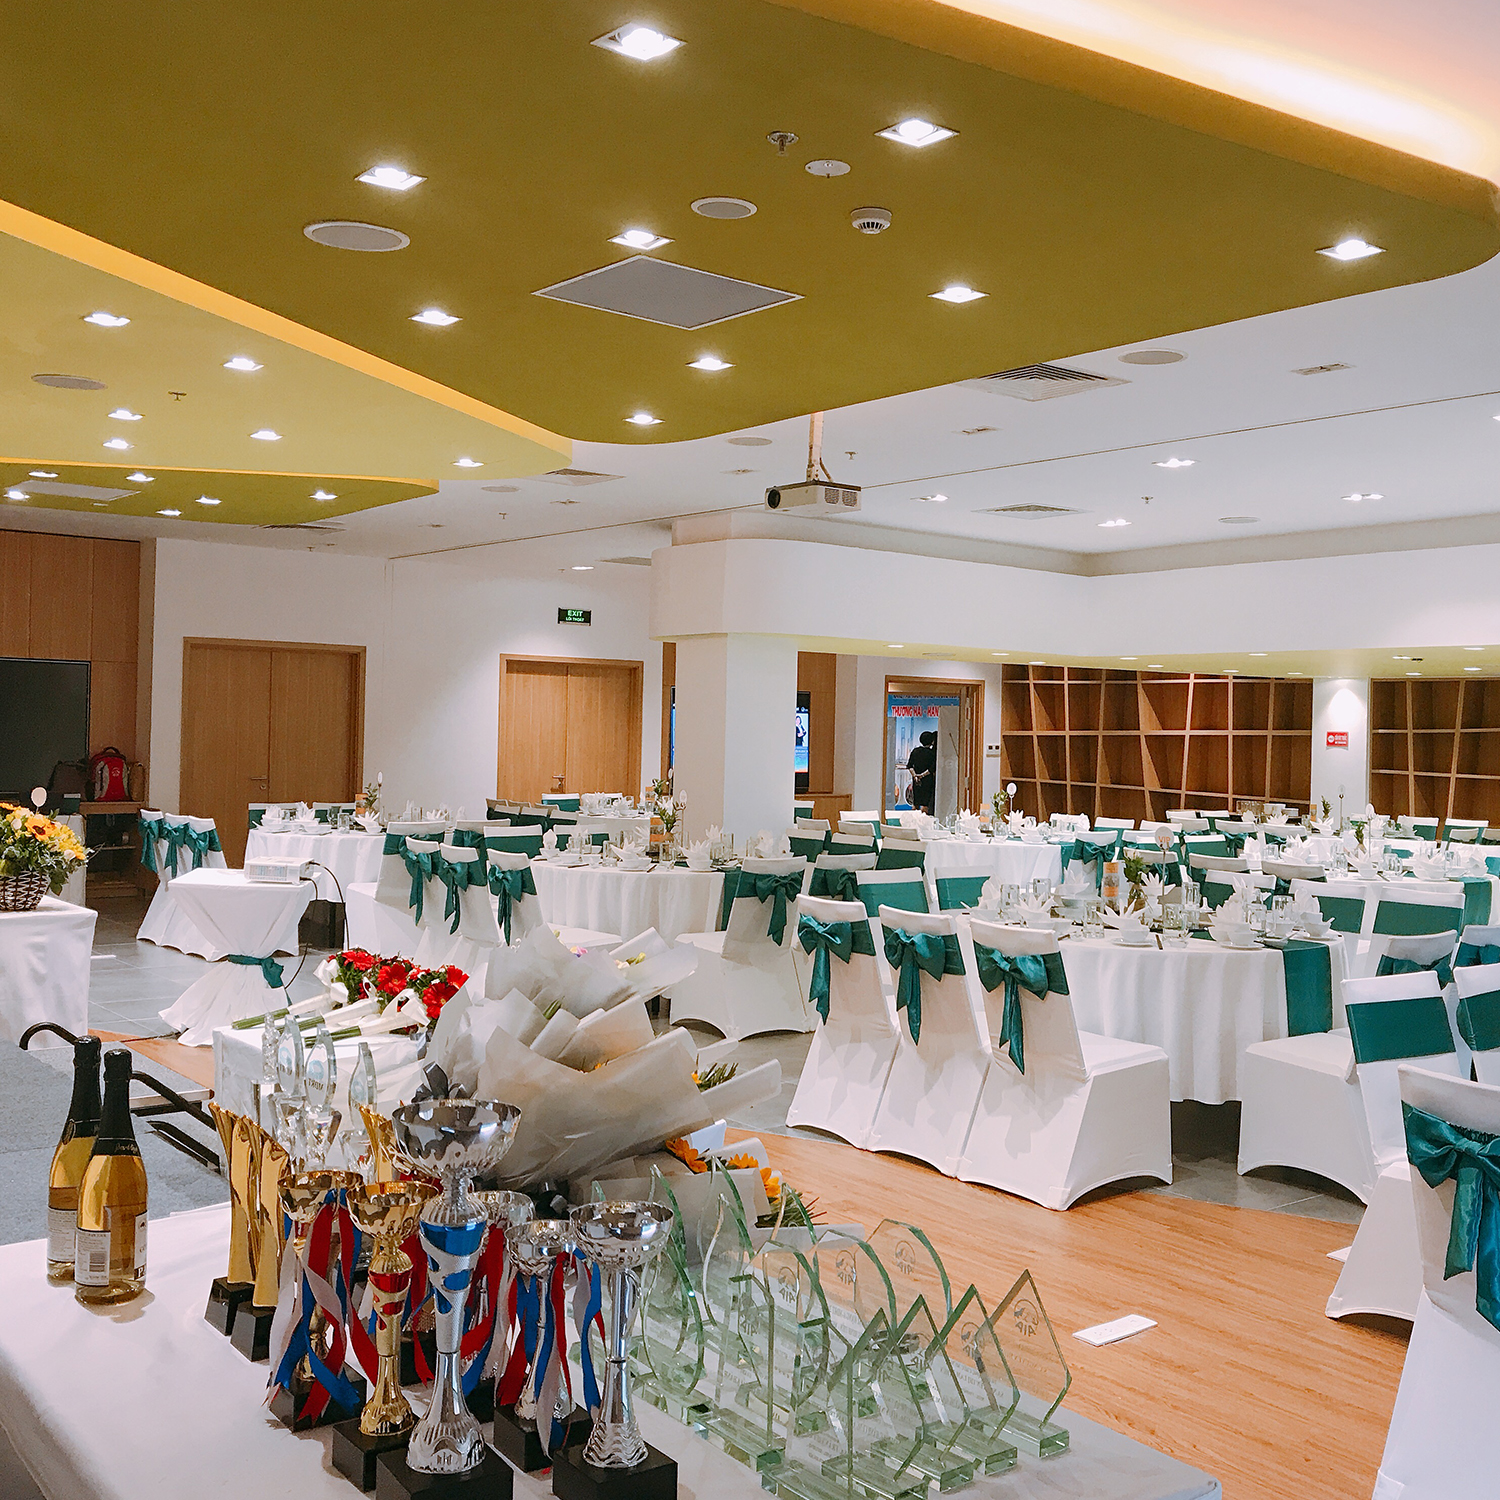 Ariyana SmartCondotel Nha Trang - Phòng rộng / Gần biển / Ưu đãi ăn uống / Voucher giá hấp dẫn